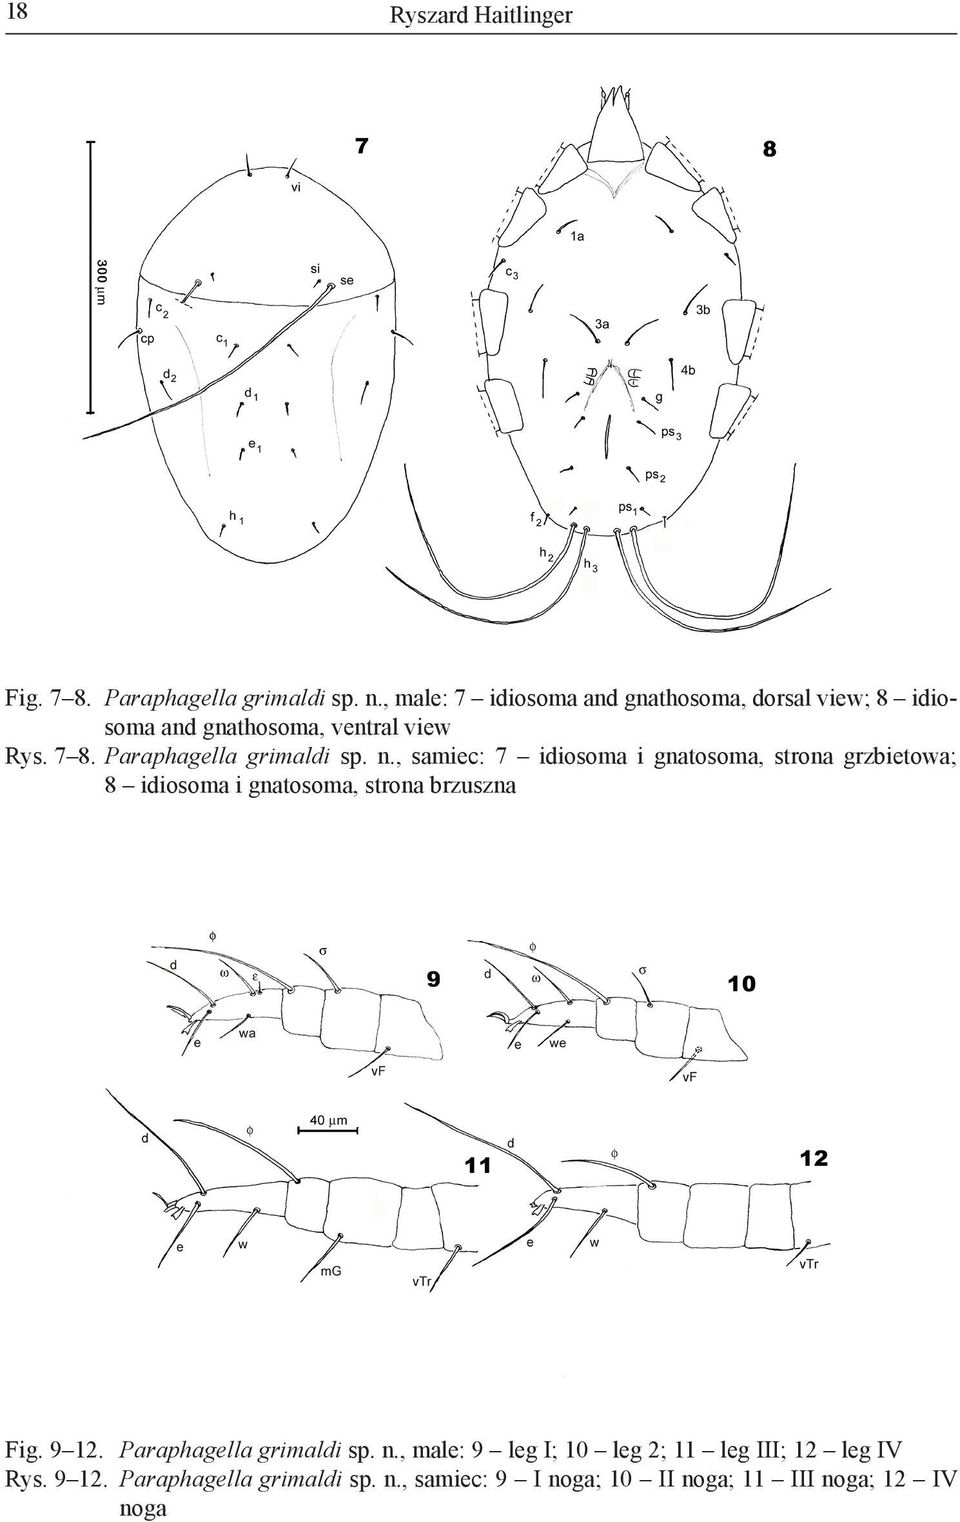 Paraphagella grimaldi sp. n.